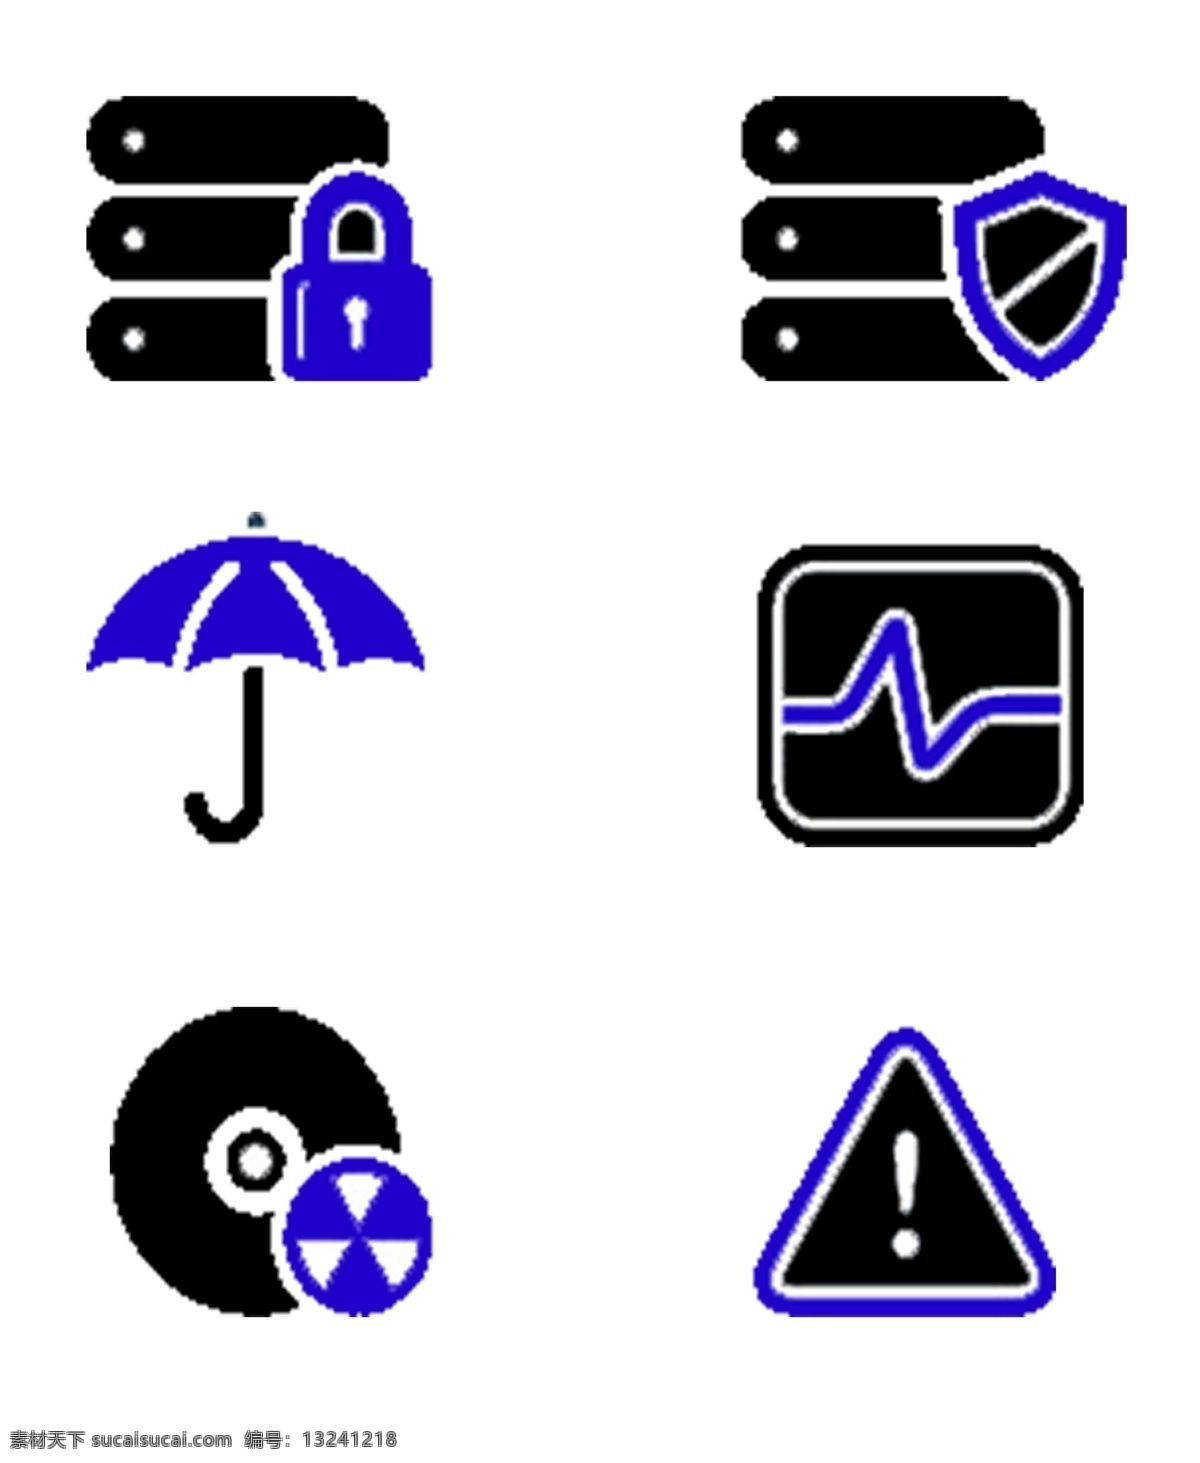 手机 应用 黑色 蓝色 图标素材 图标 锁屏 手机管家 雨伞 统计图 播放器 免抠 png格式 黑蓝